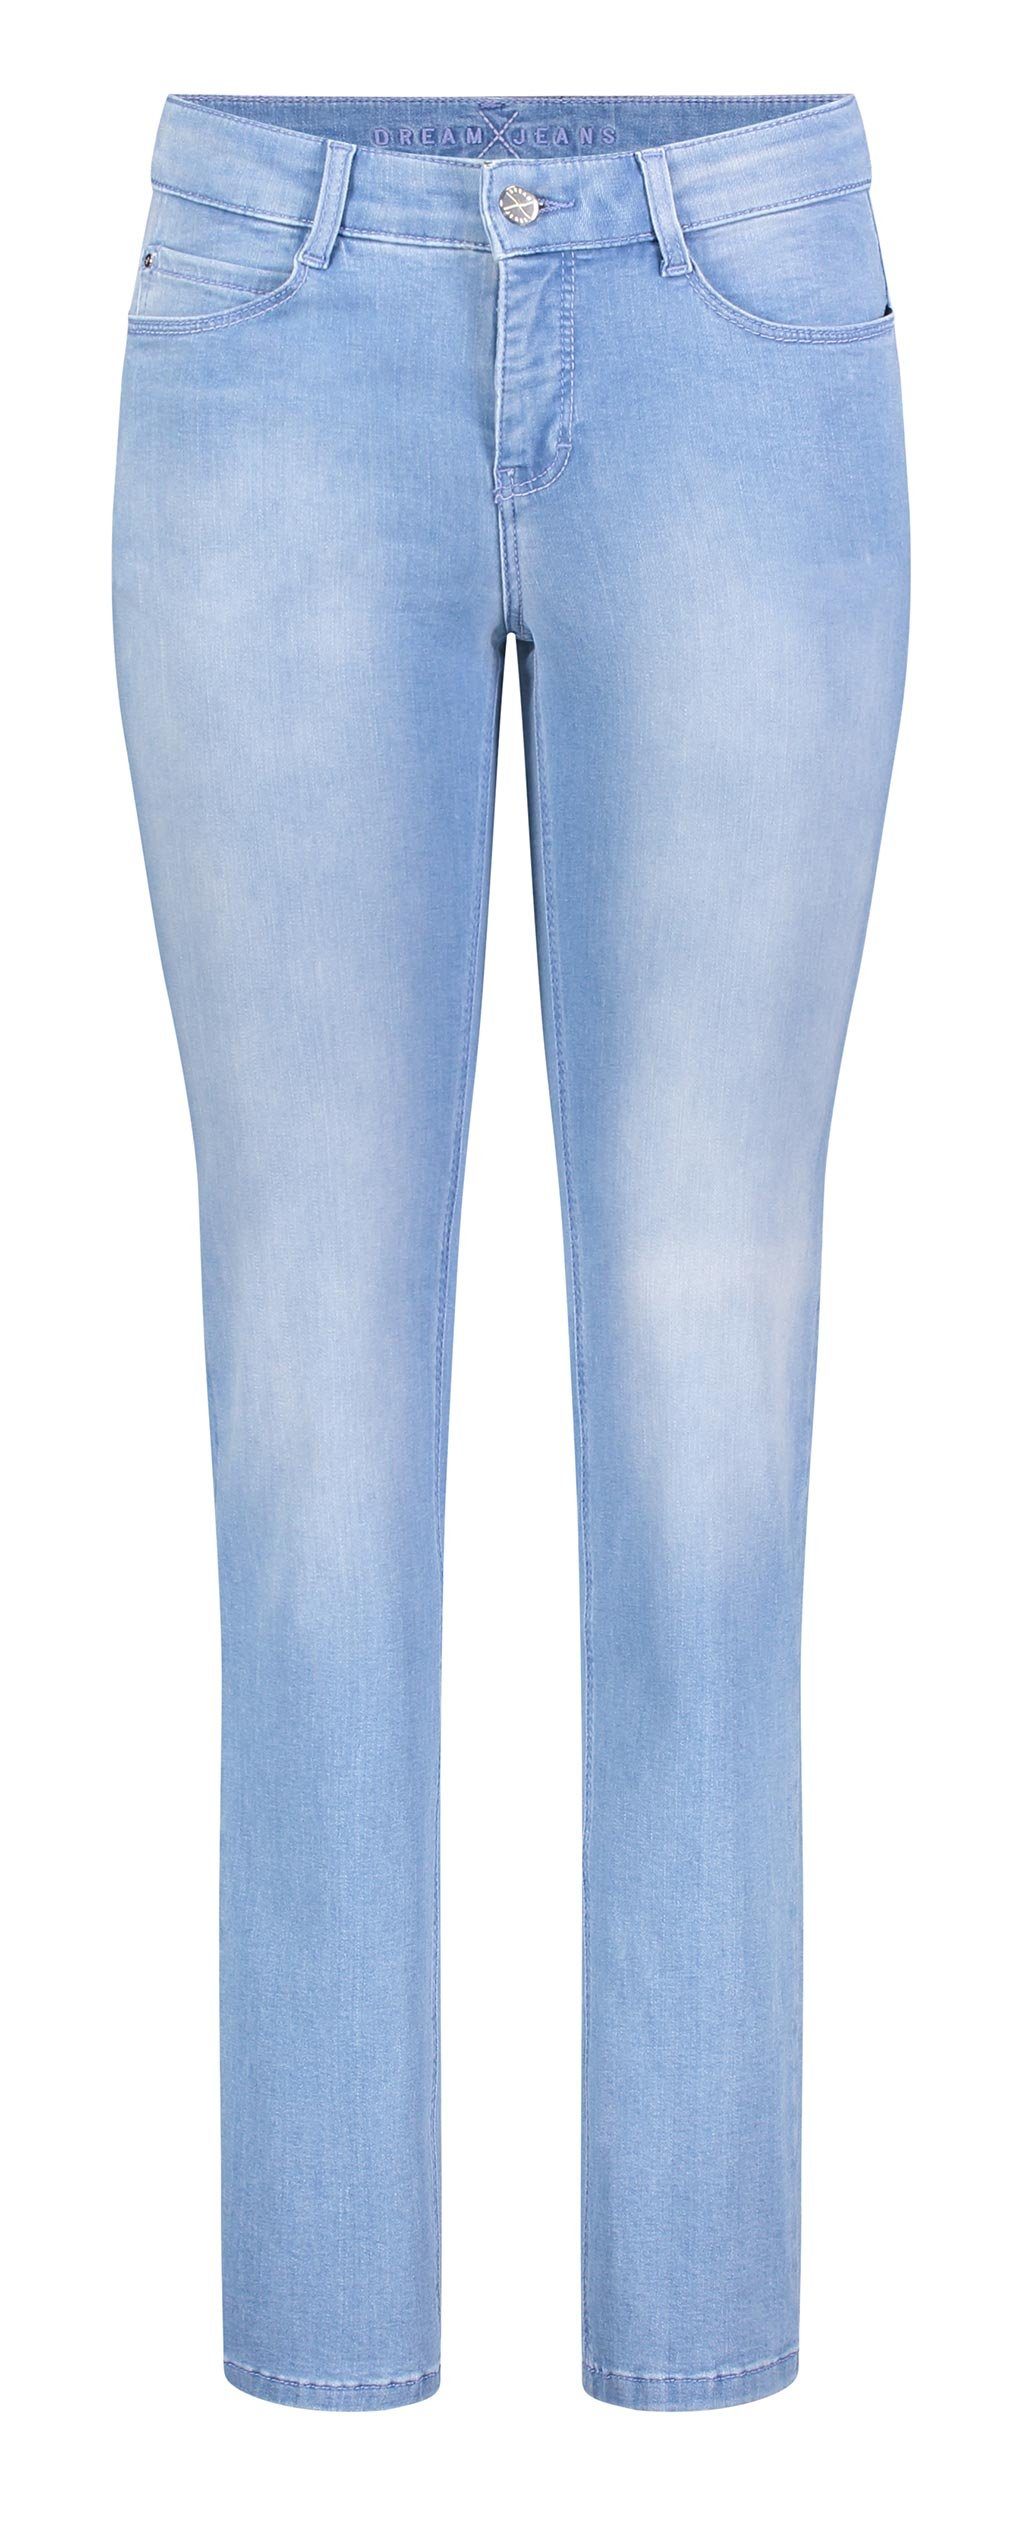 MAC Stretch-Jeans MAC DREAM basic bleached blue 5401-90-0355L D491